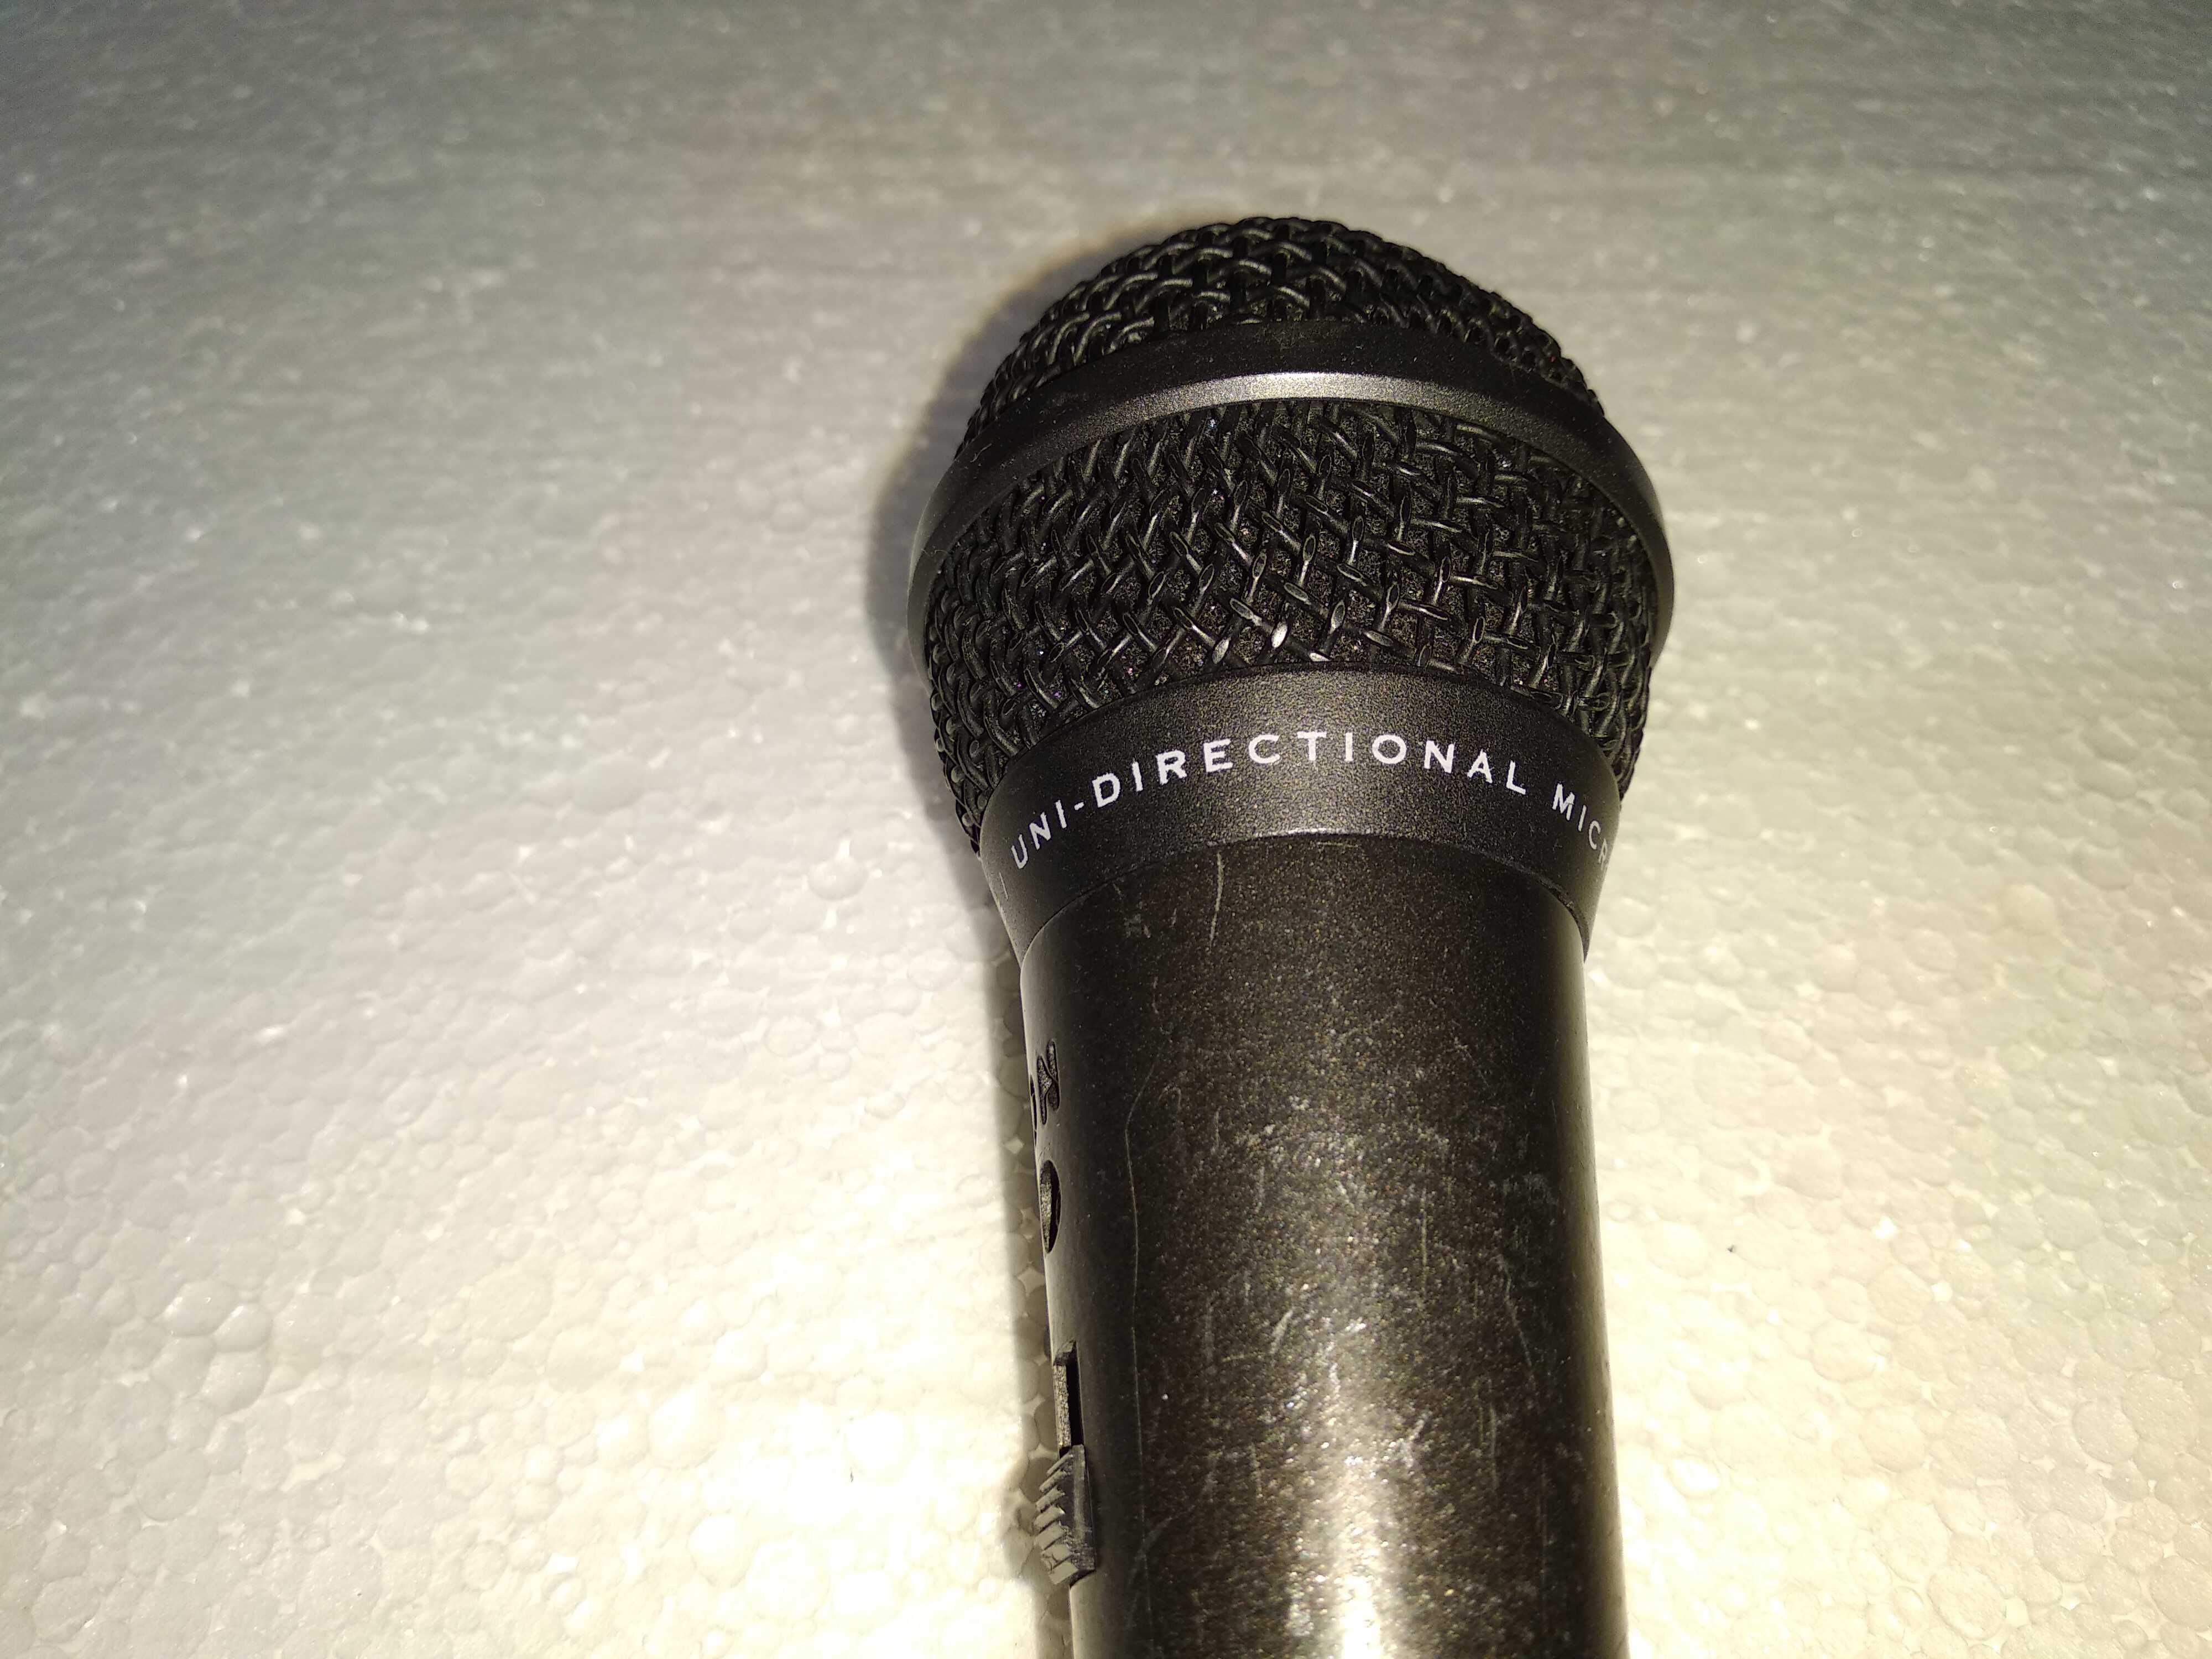 Mikrofon przewodowy Phillips SBC 3035 XLR